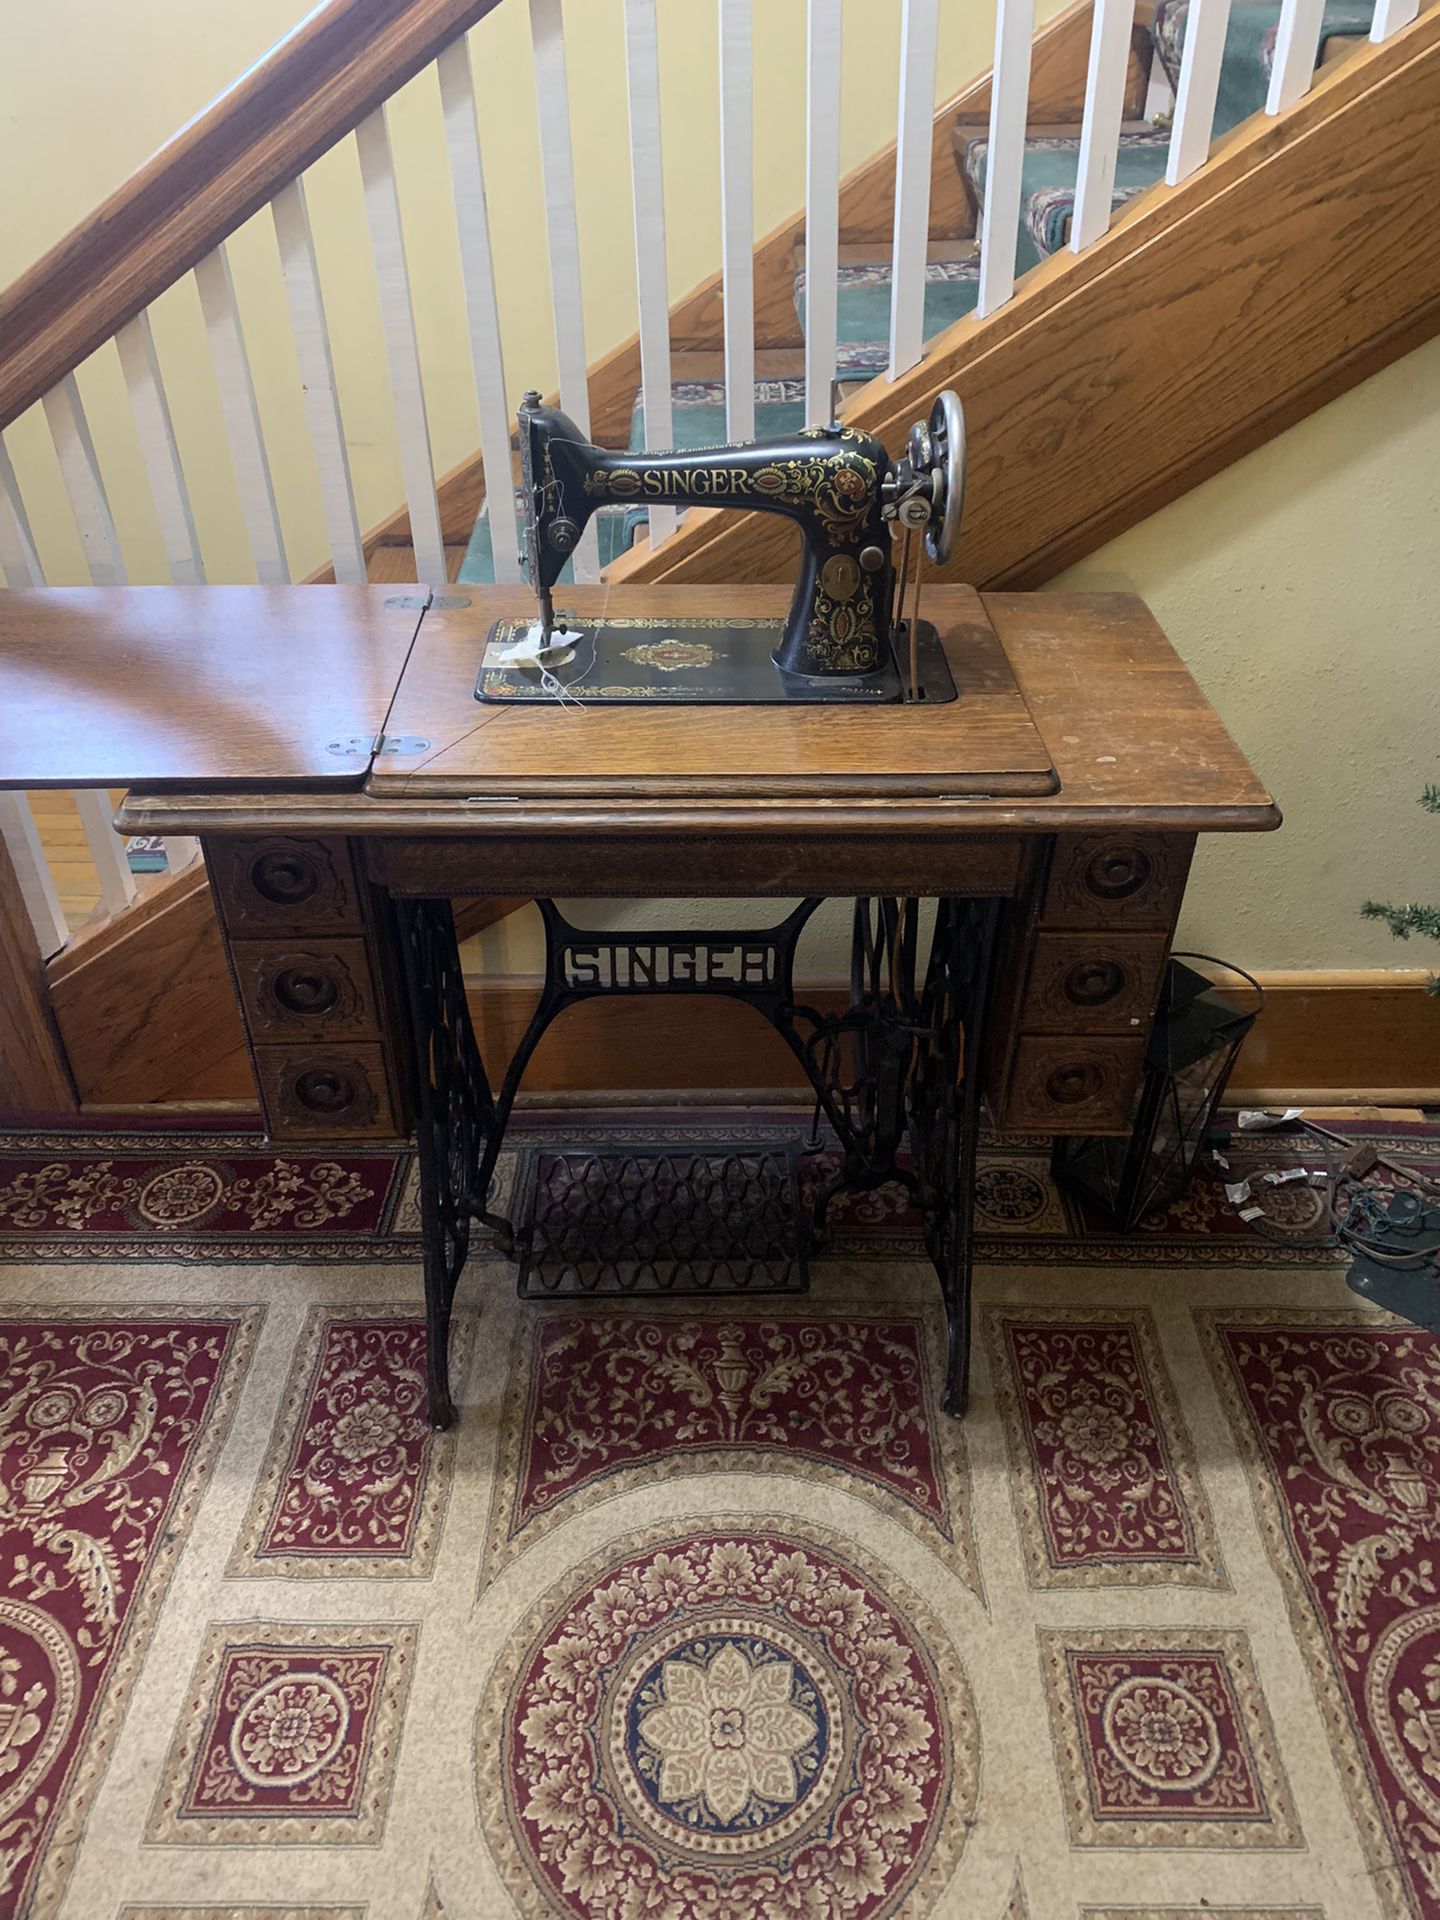 1912 singer sewing machine